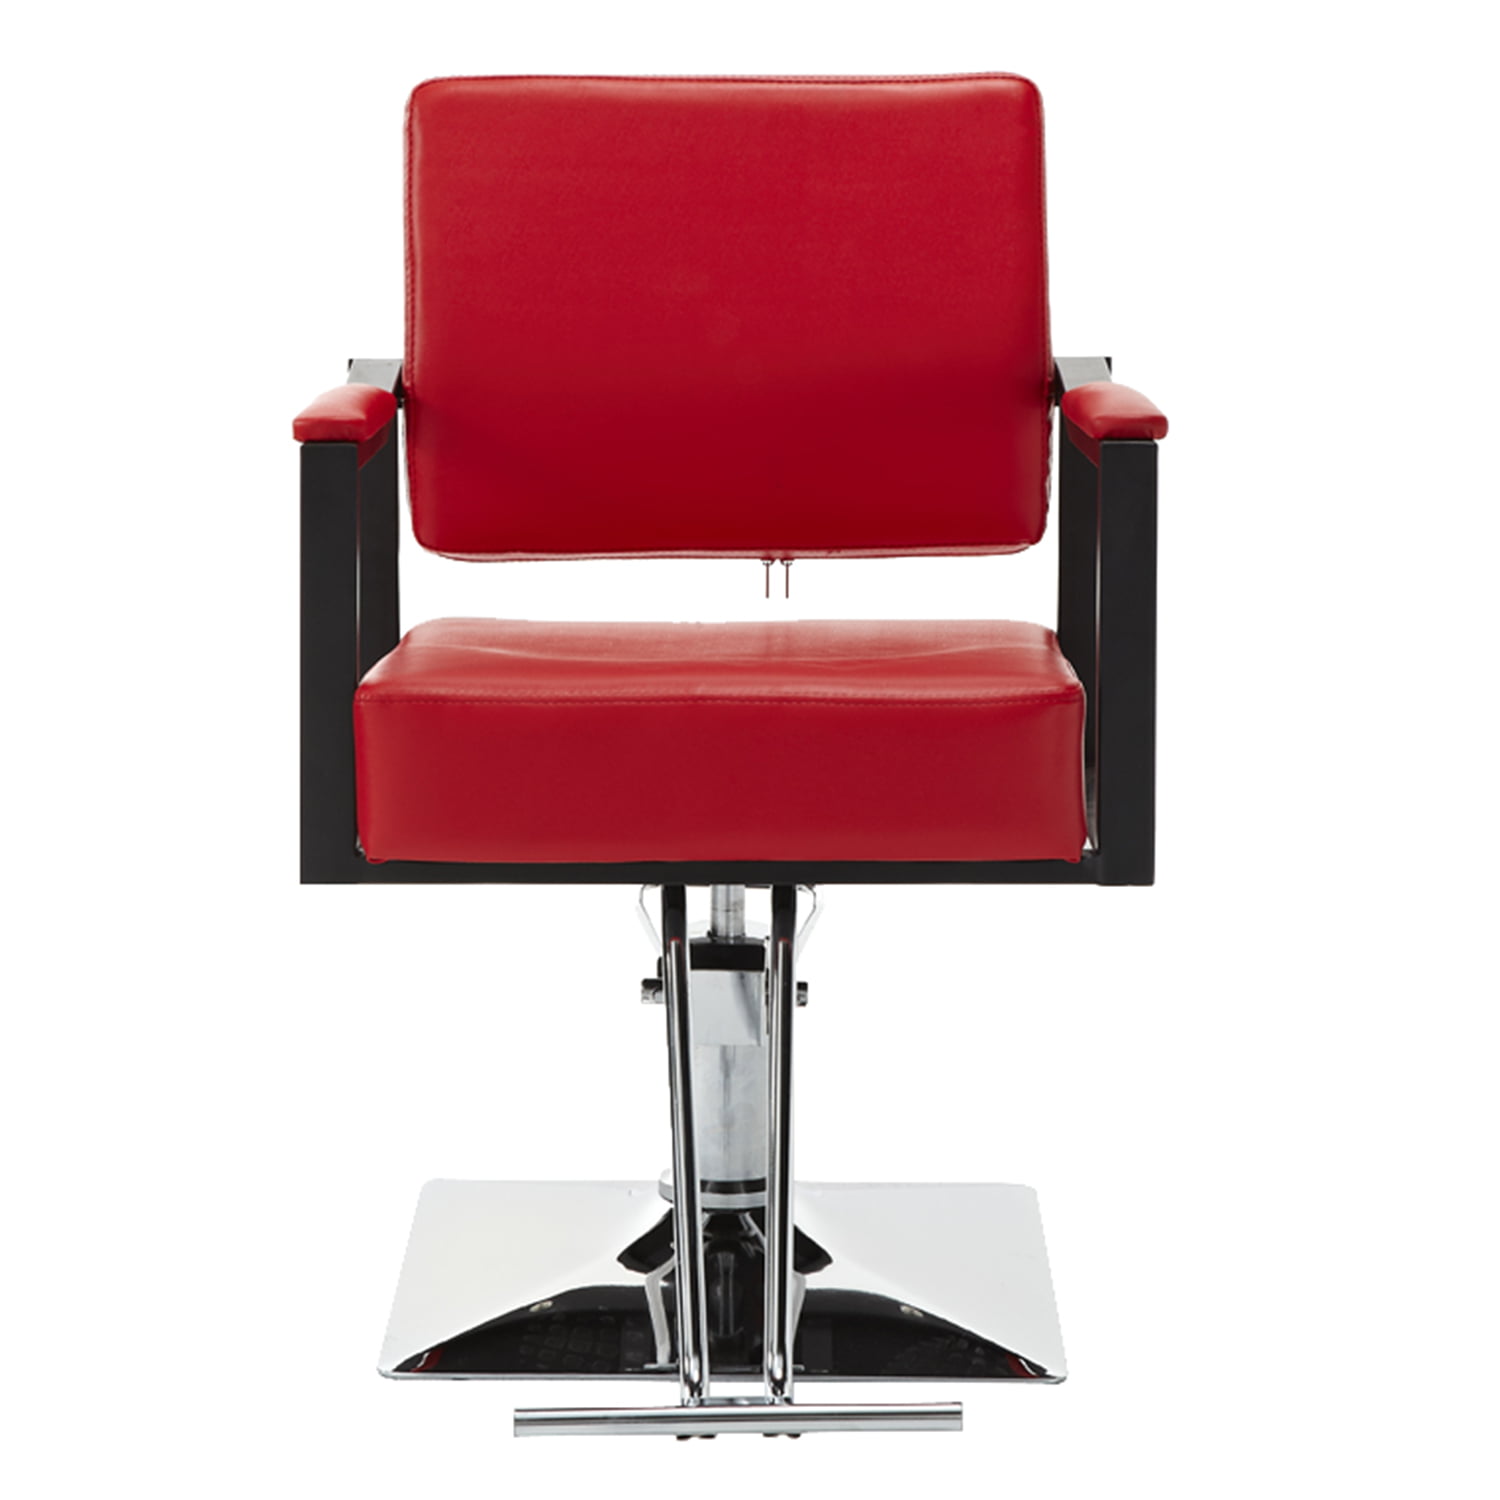 Hydraulic Hair Styling Chair Salon Barber Chair Haircut